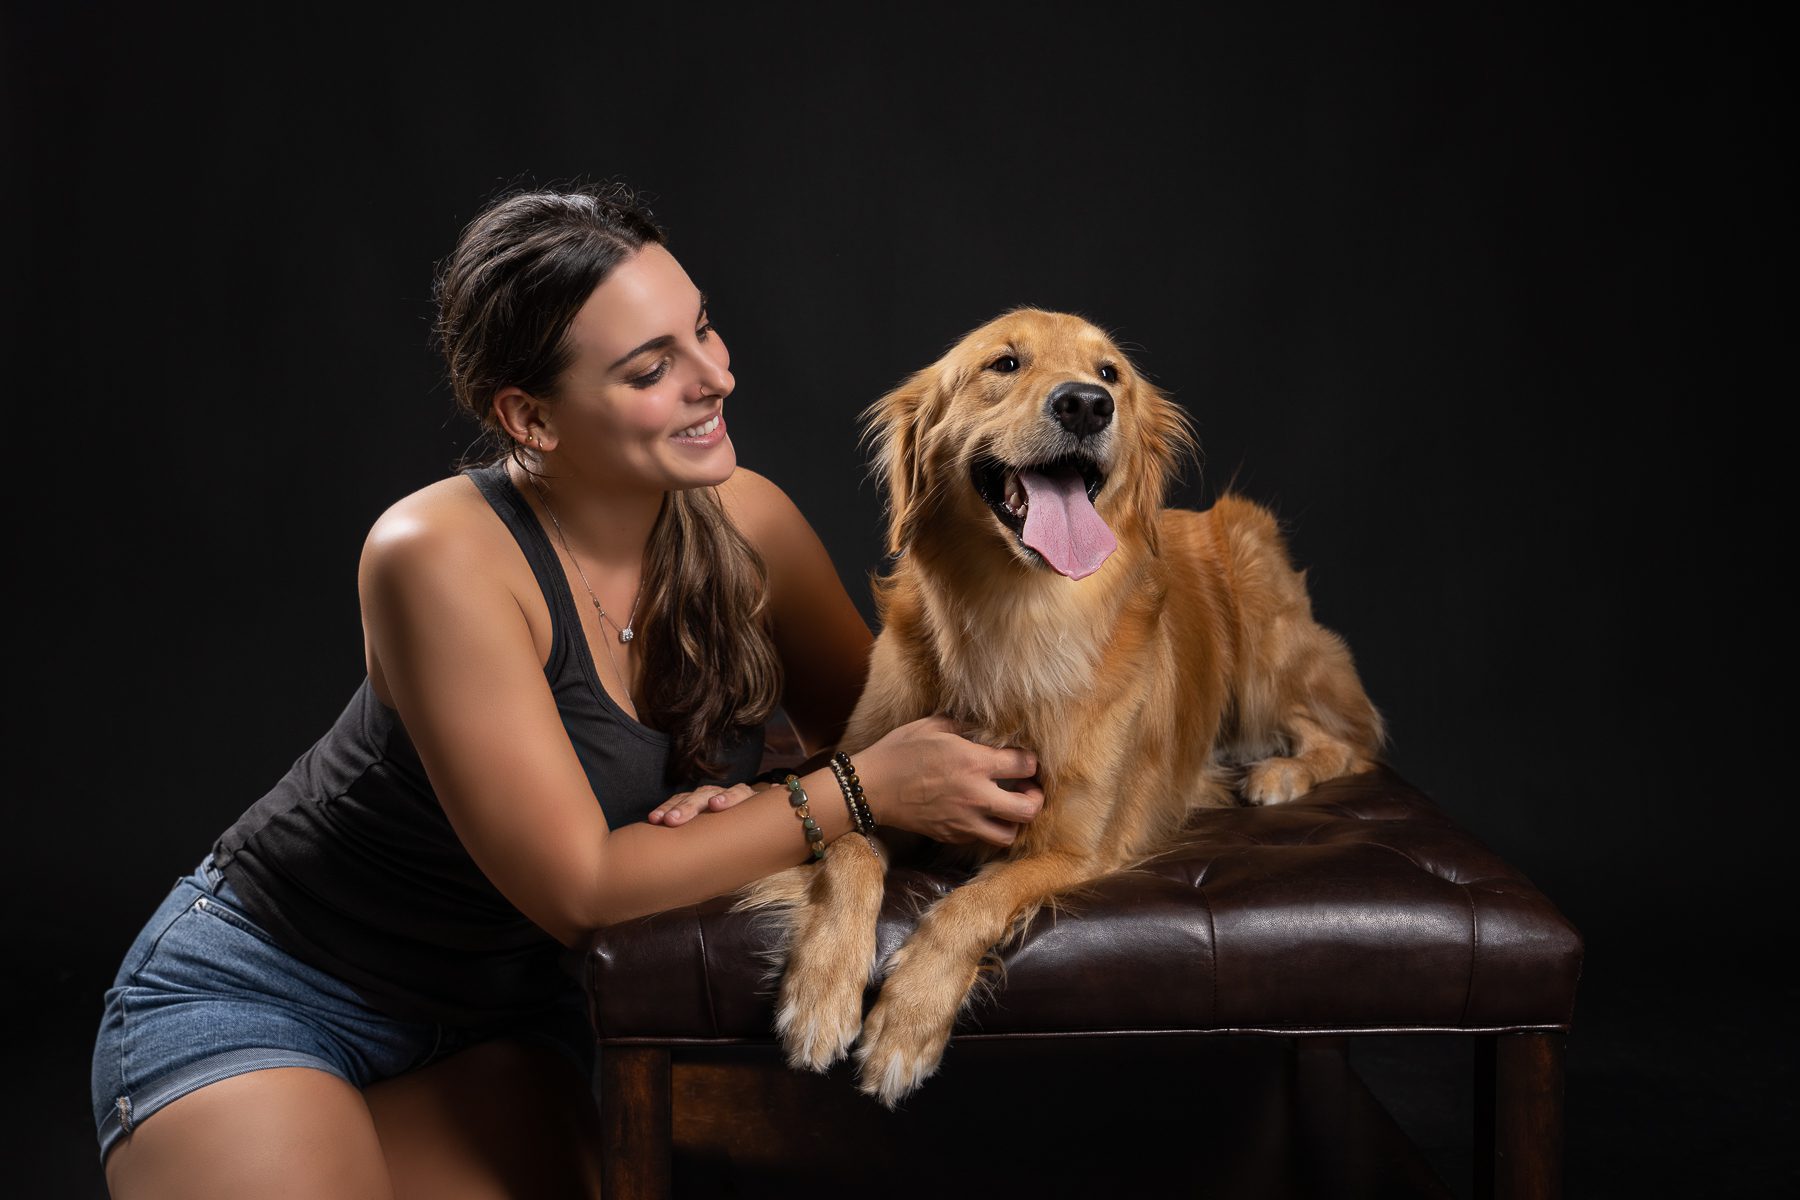 Smiling girl with dog on sofa